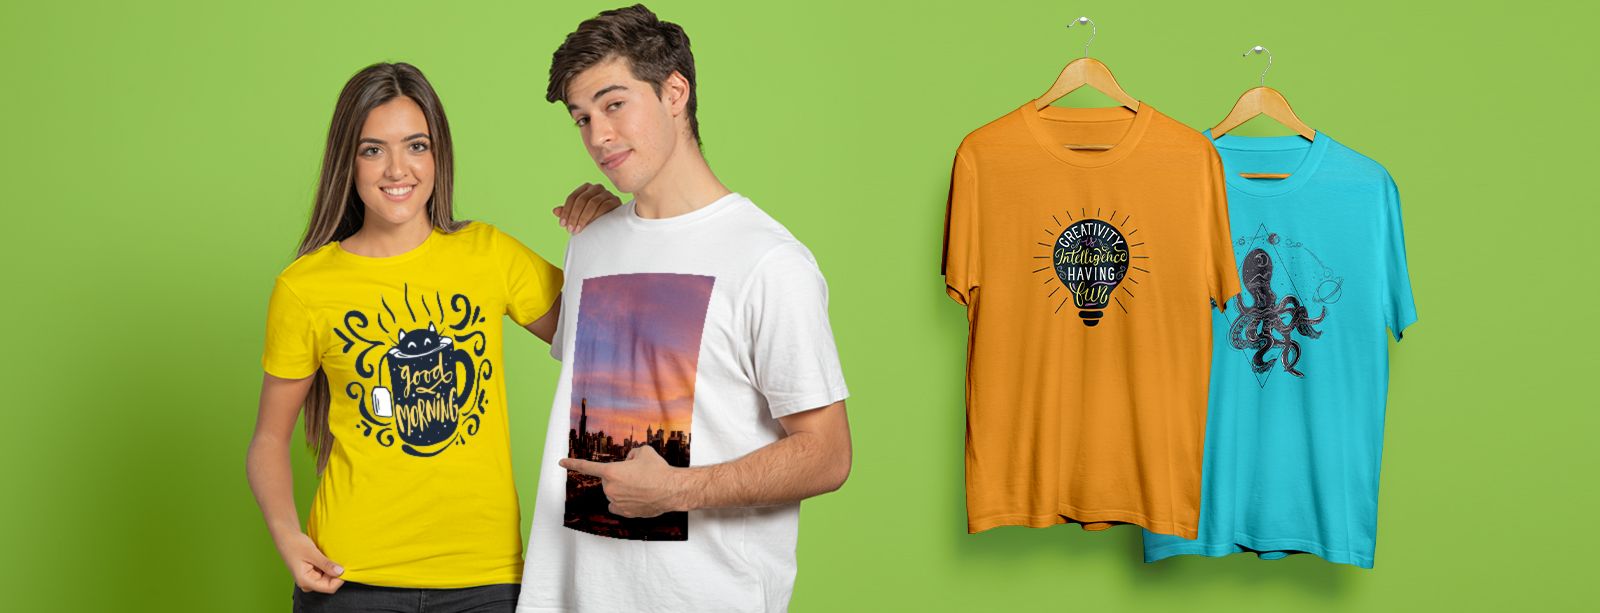 magliette personalizzate, crea il tuo stile con una t-shirt da personalizzare con foto e grafiche